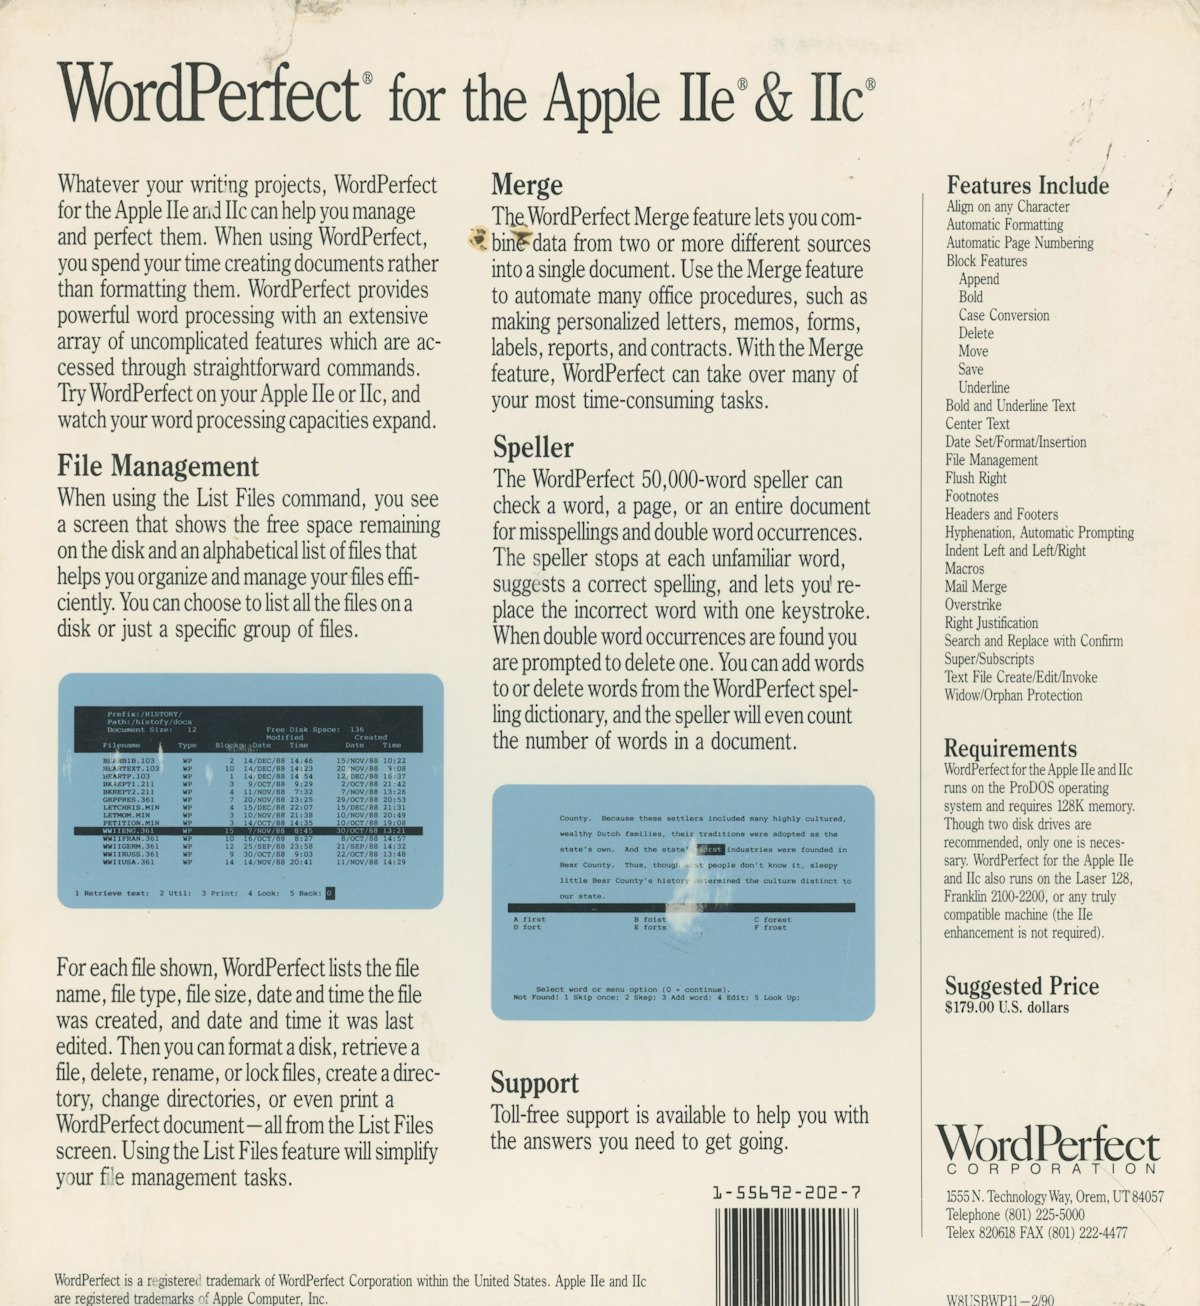 WordPerfect for the Apple IIe and IIc